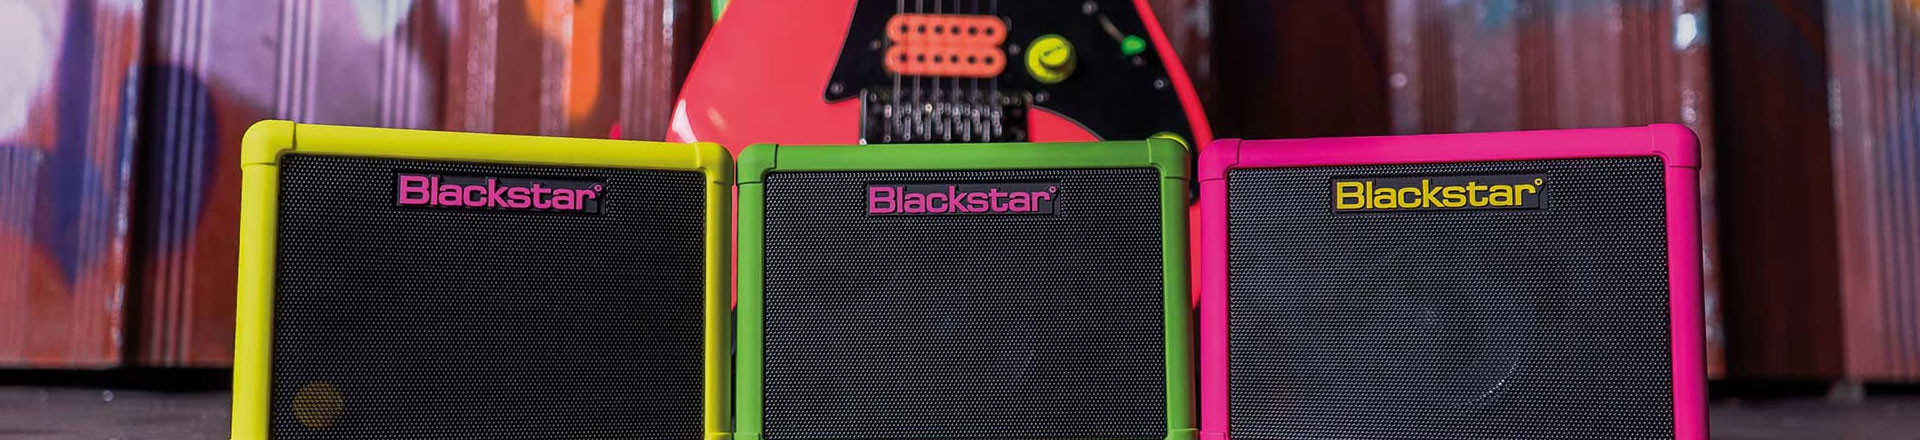 Neonowa kruszynka od Blackstar - oto Fly Neon